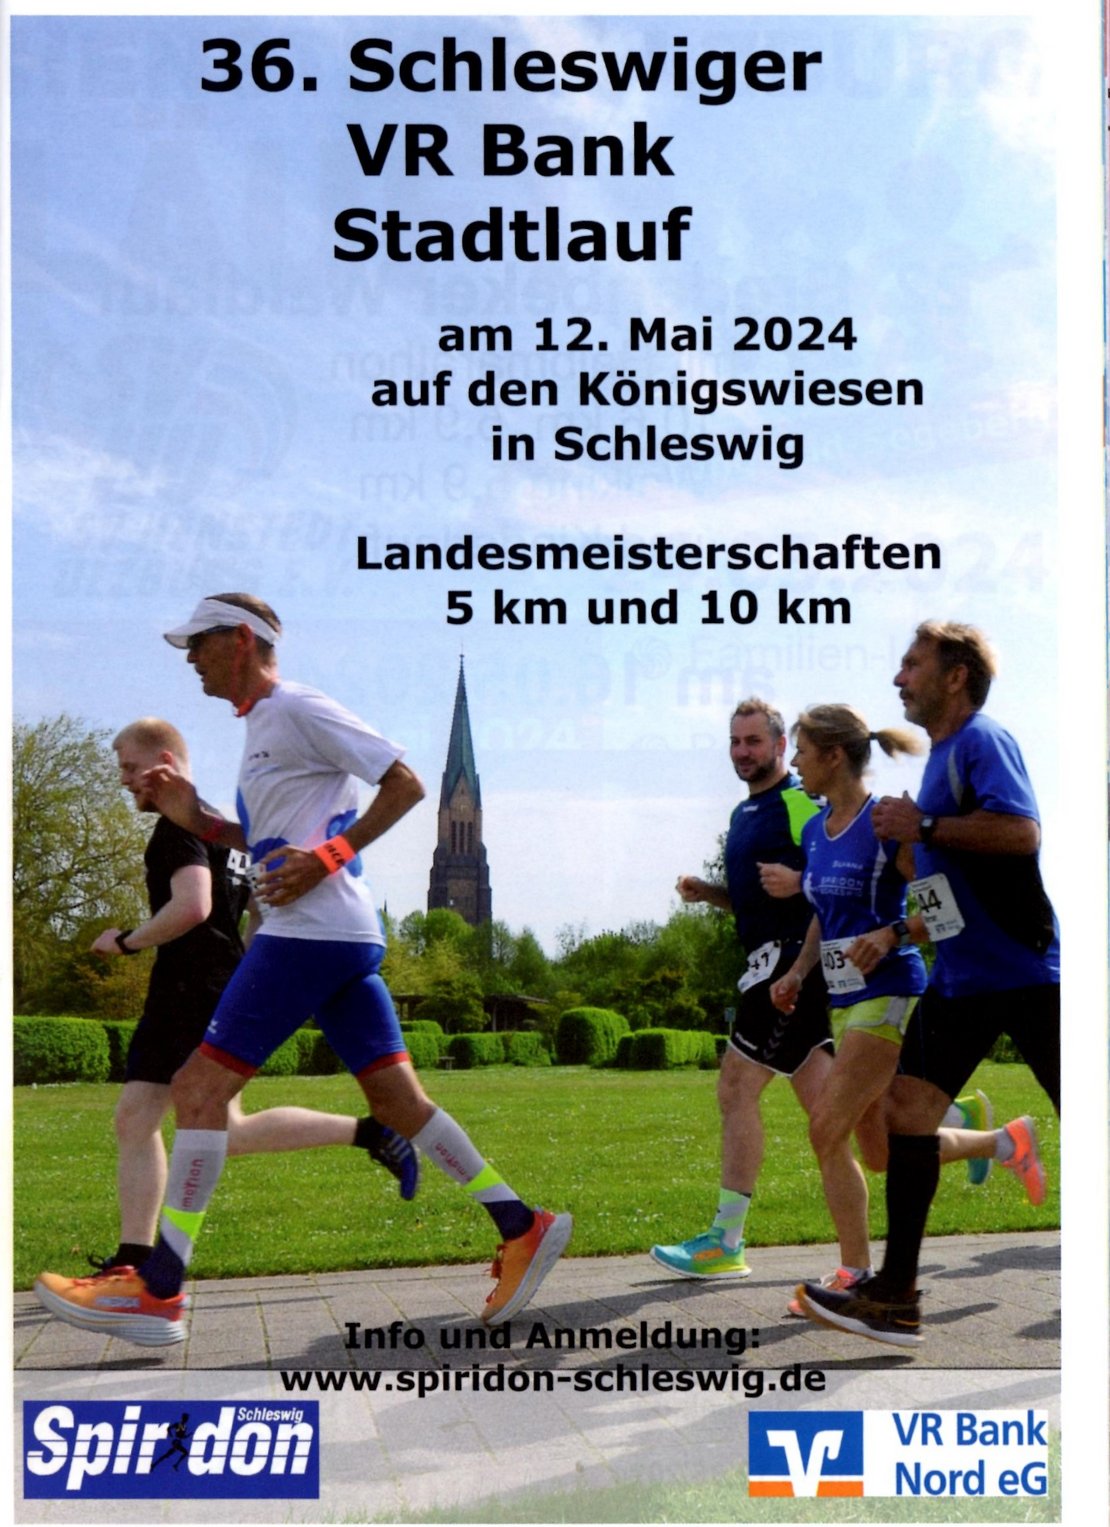 Plakat 36. Schleswiger VR Bank Stadtlauf am 12. Mai 2024 auf den Königswiesen in Schleswig, Landesmeisterschaft 5km und 10km